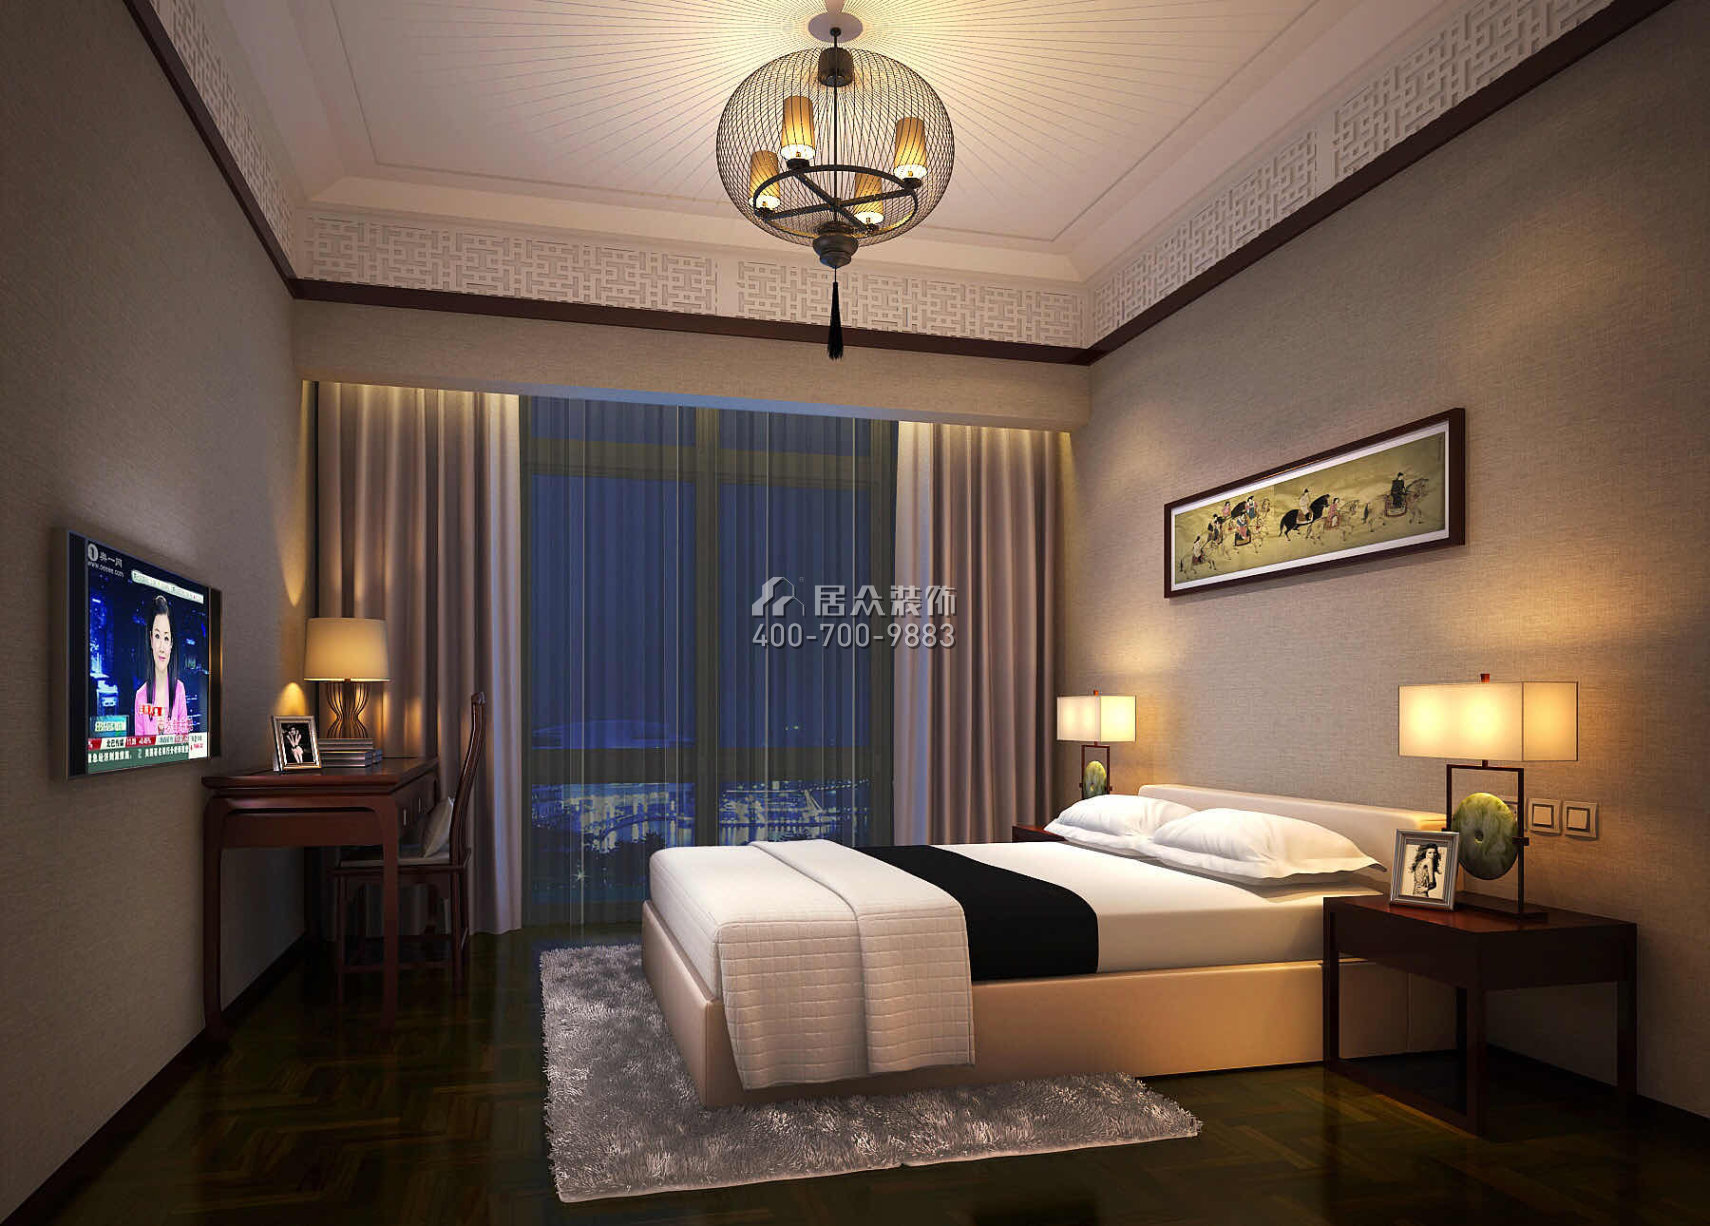 翠岭华庭120平方米中式风格平层户型卧室装修效果图